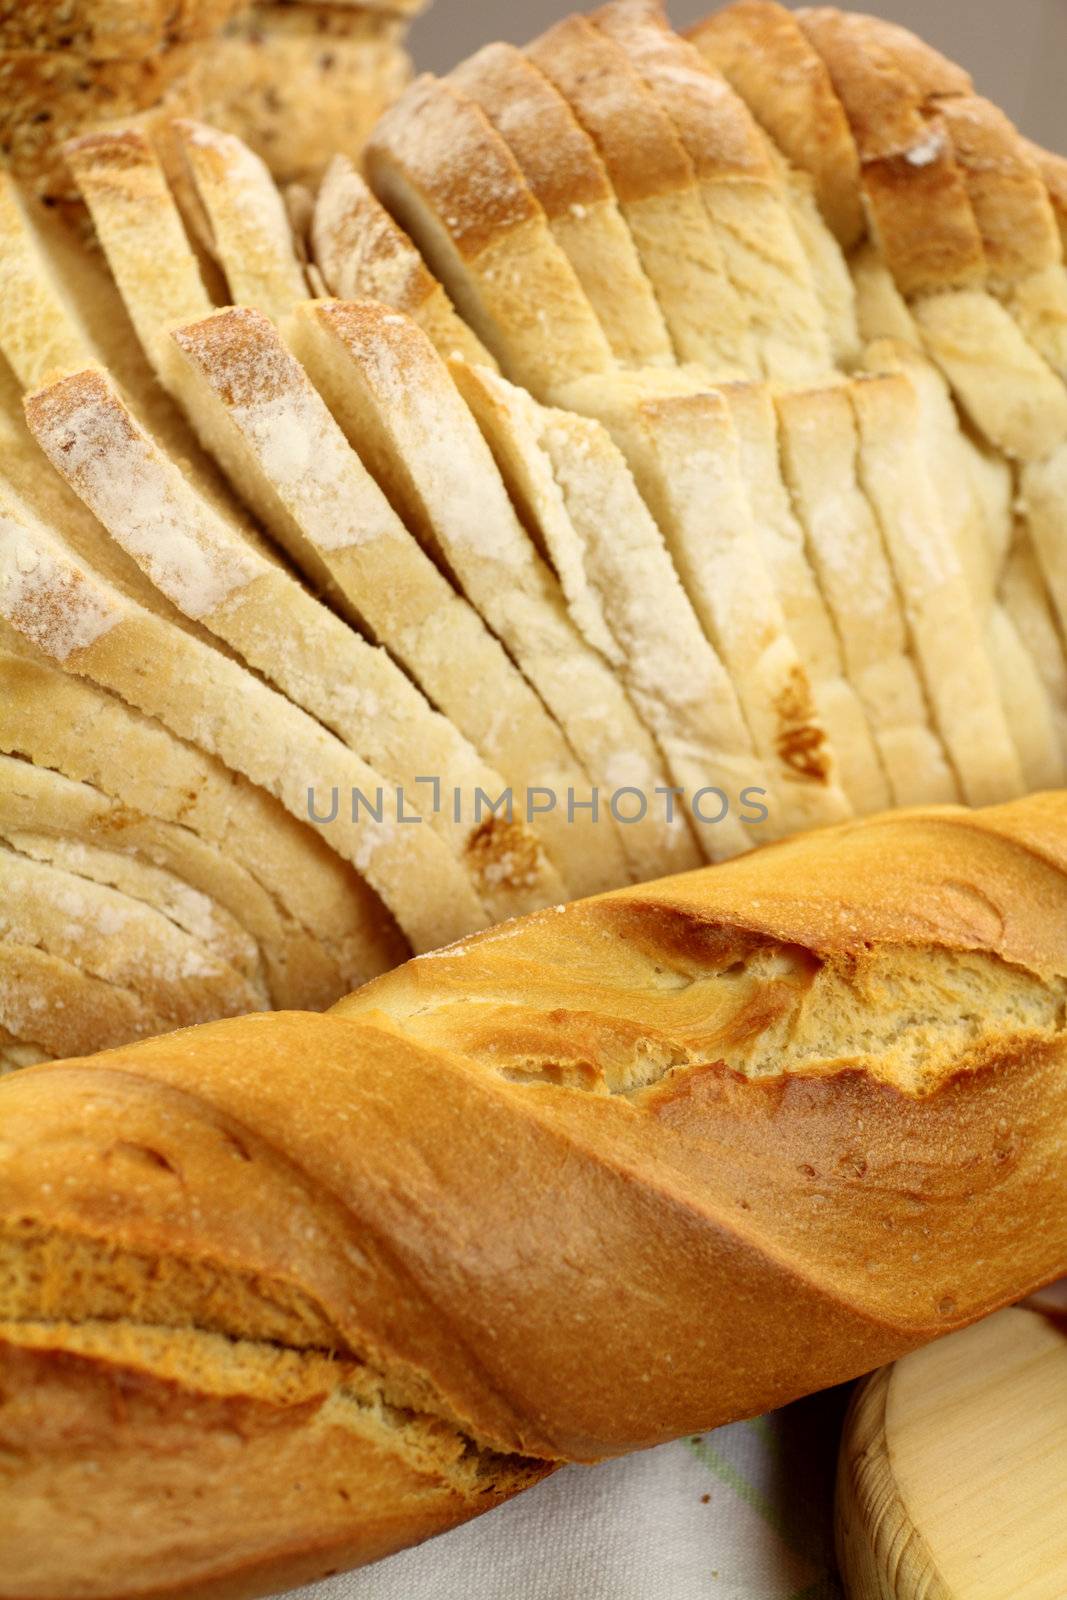 Bread Textures by jabiru